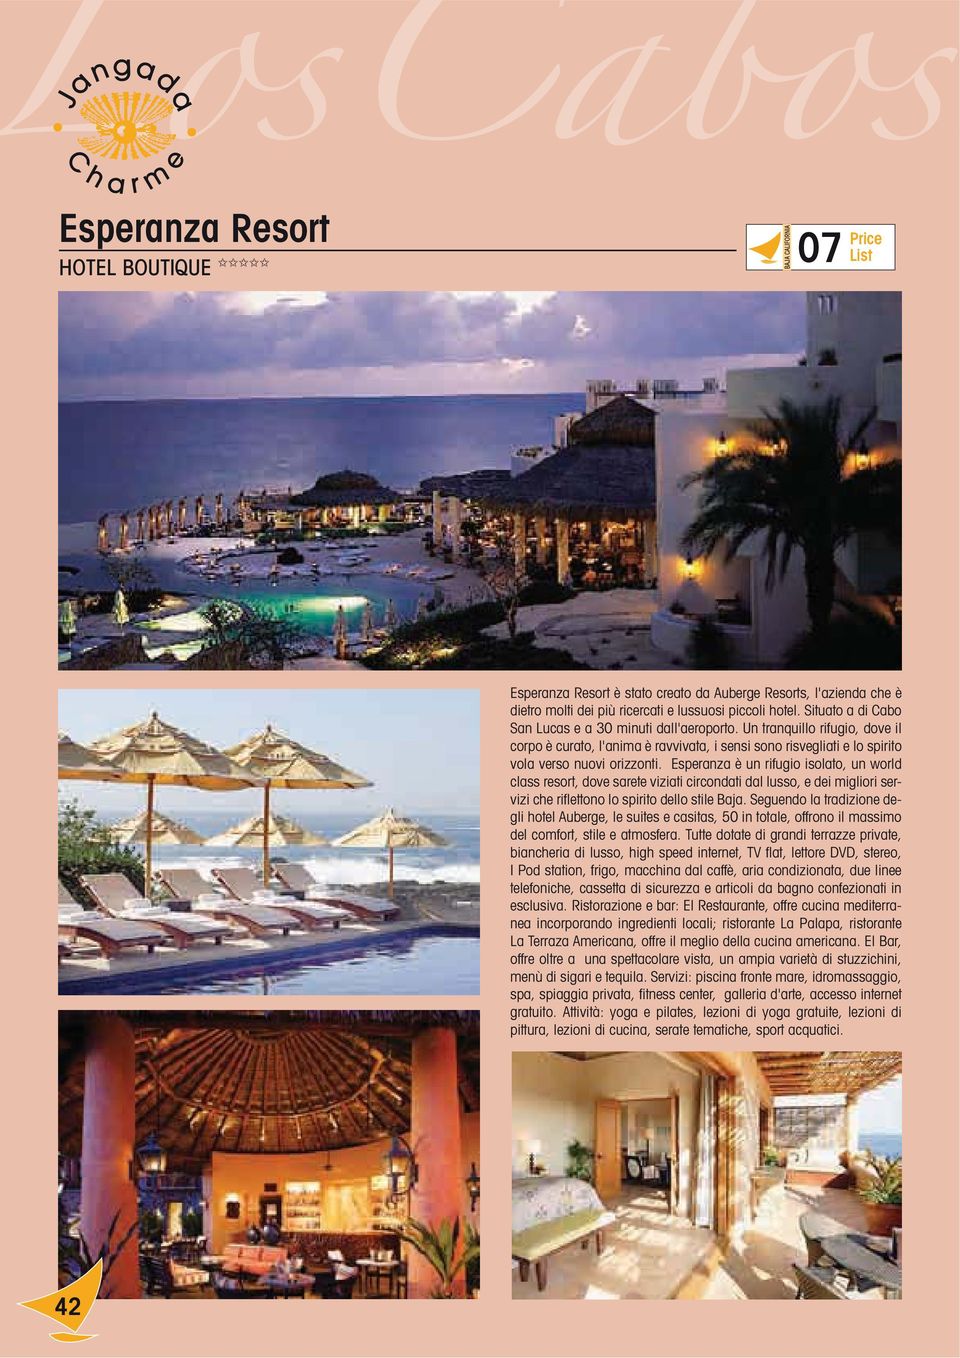 Esperanza è un rifugio isolato, un world class resort, dove sarete viziati circondati dal lusso, e dei migliori servizi che riflettono lo spirito dello stile Baja.